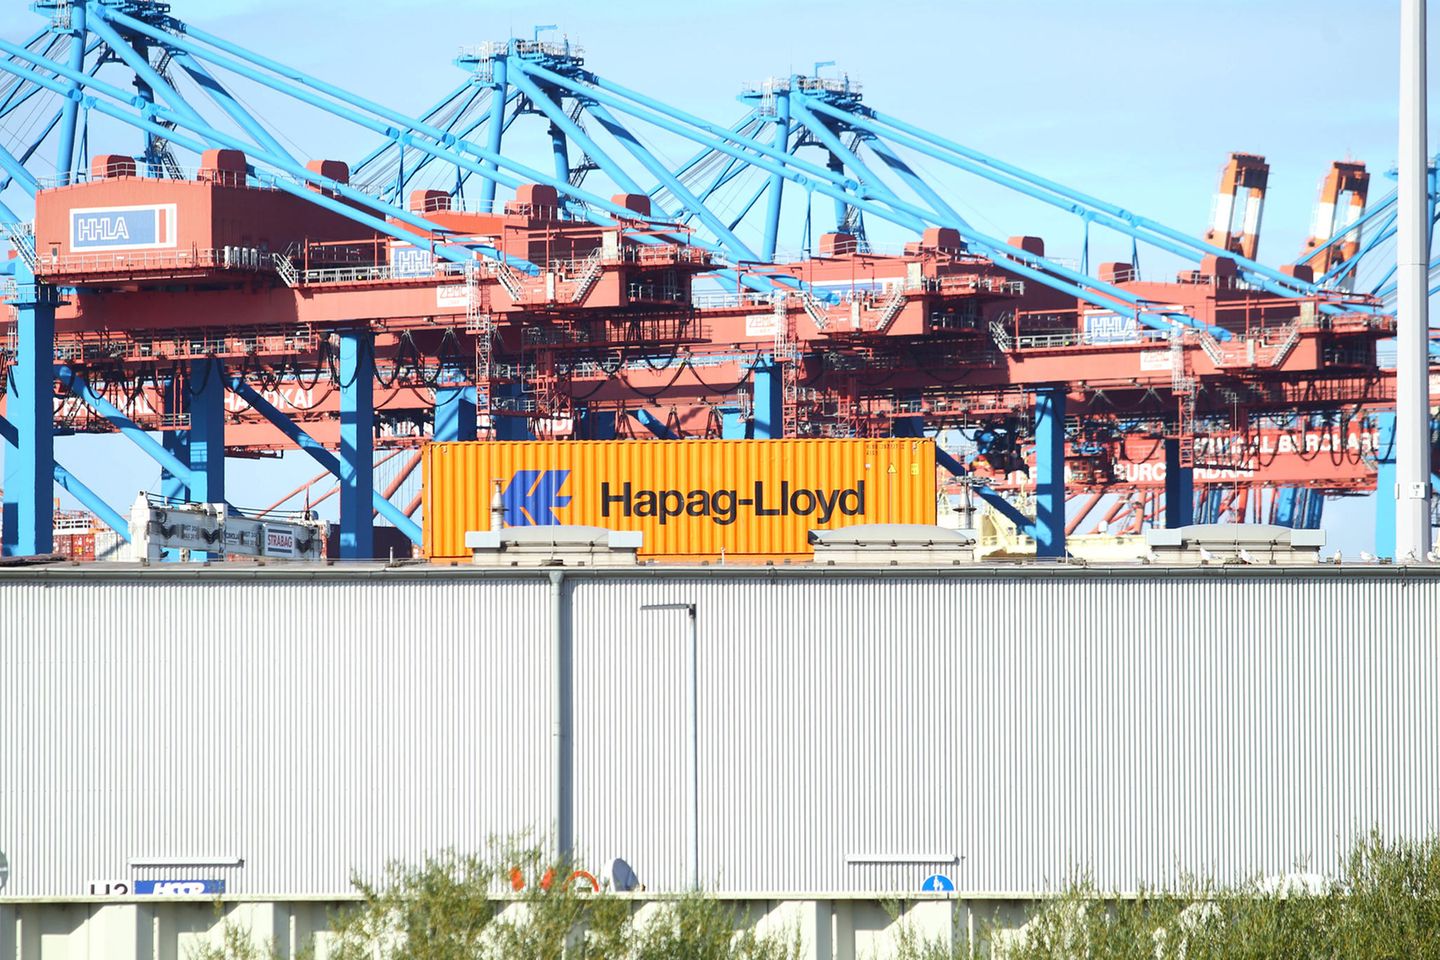 Hapag-Lloyd-Container in Hamburg: Aktienpapiere des Unternehmens kosteten Mitte des Jahres noch 450 Euro – heute liegt der Kurs bei nicht einmal 190 Euro